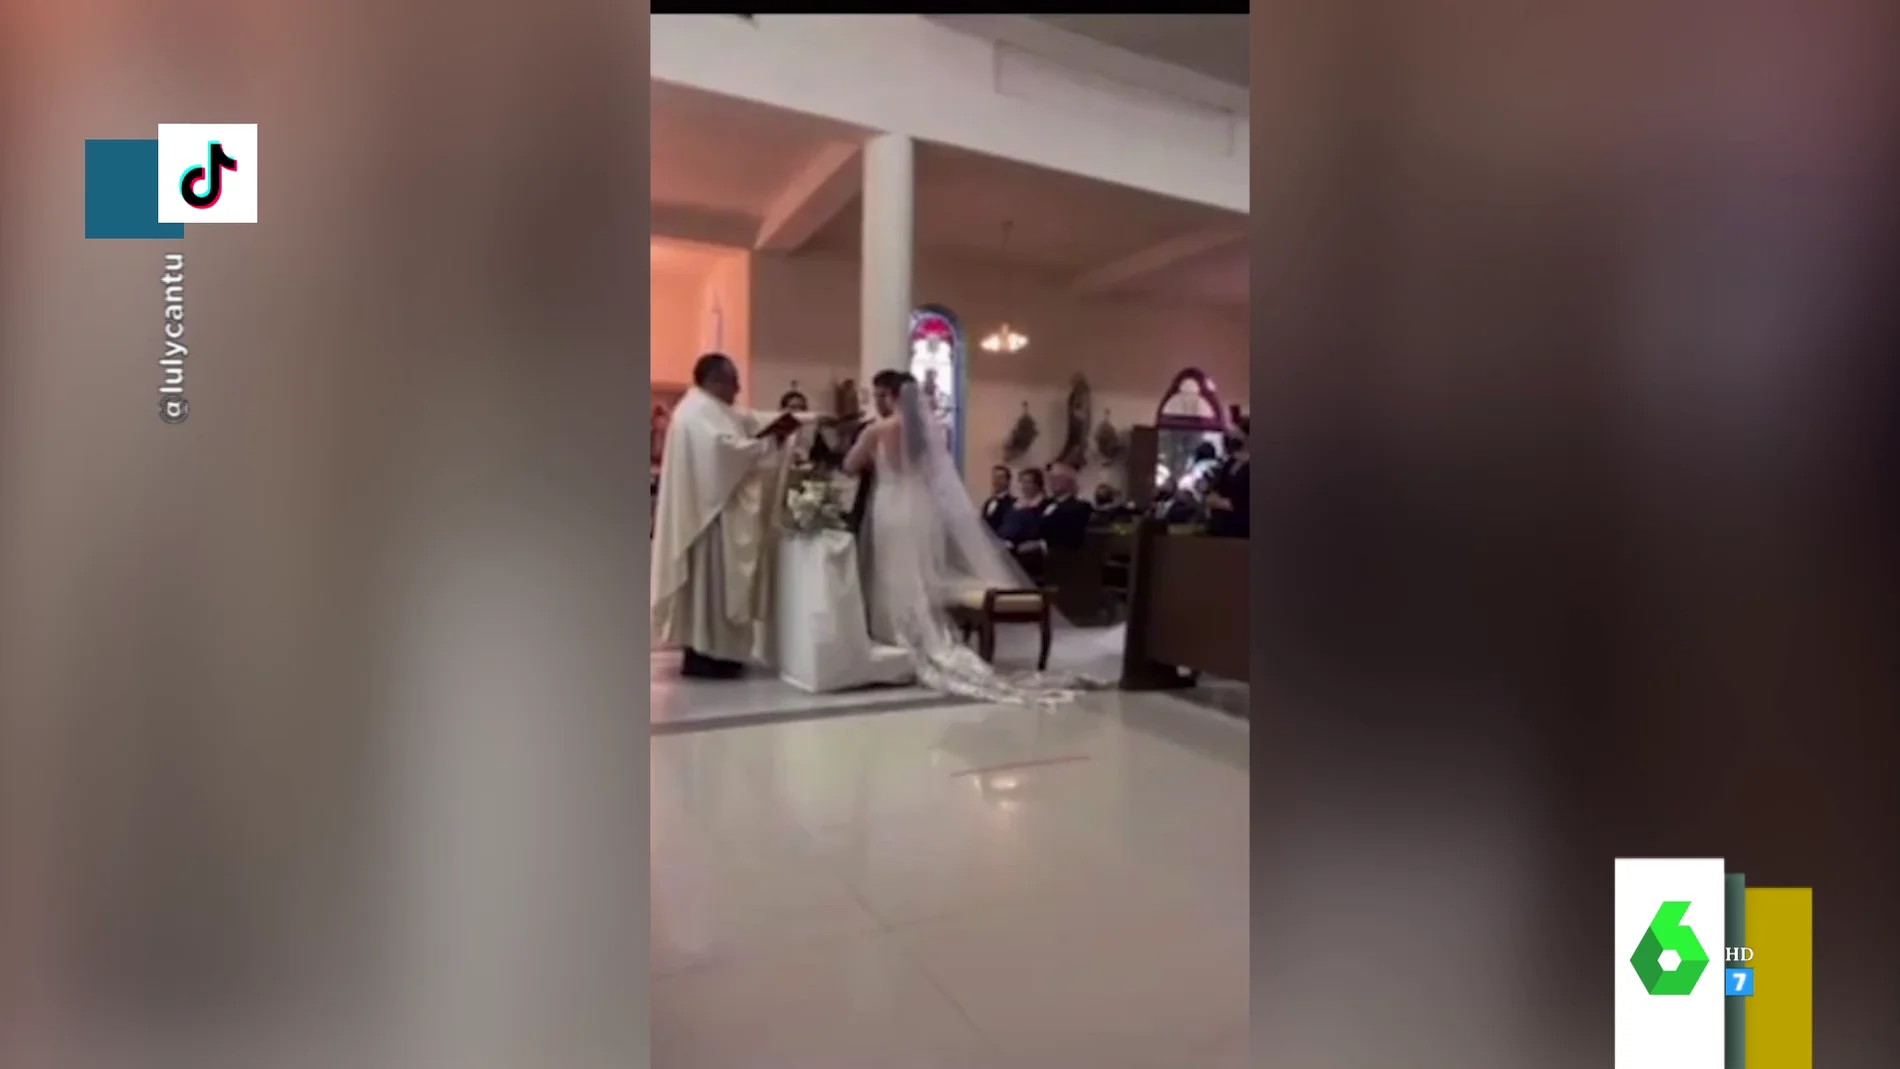 "Siempre te seré infiel": el surrealista lapsus de un novio ante el altar en plena boda